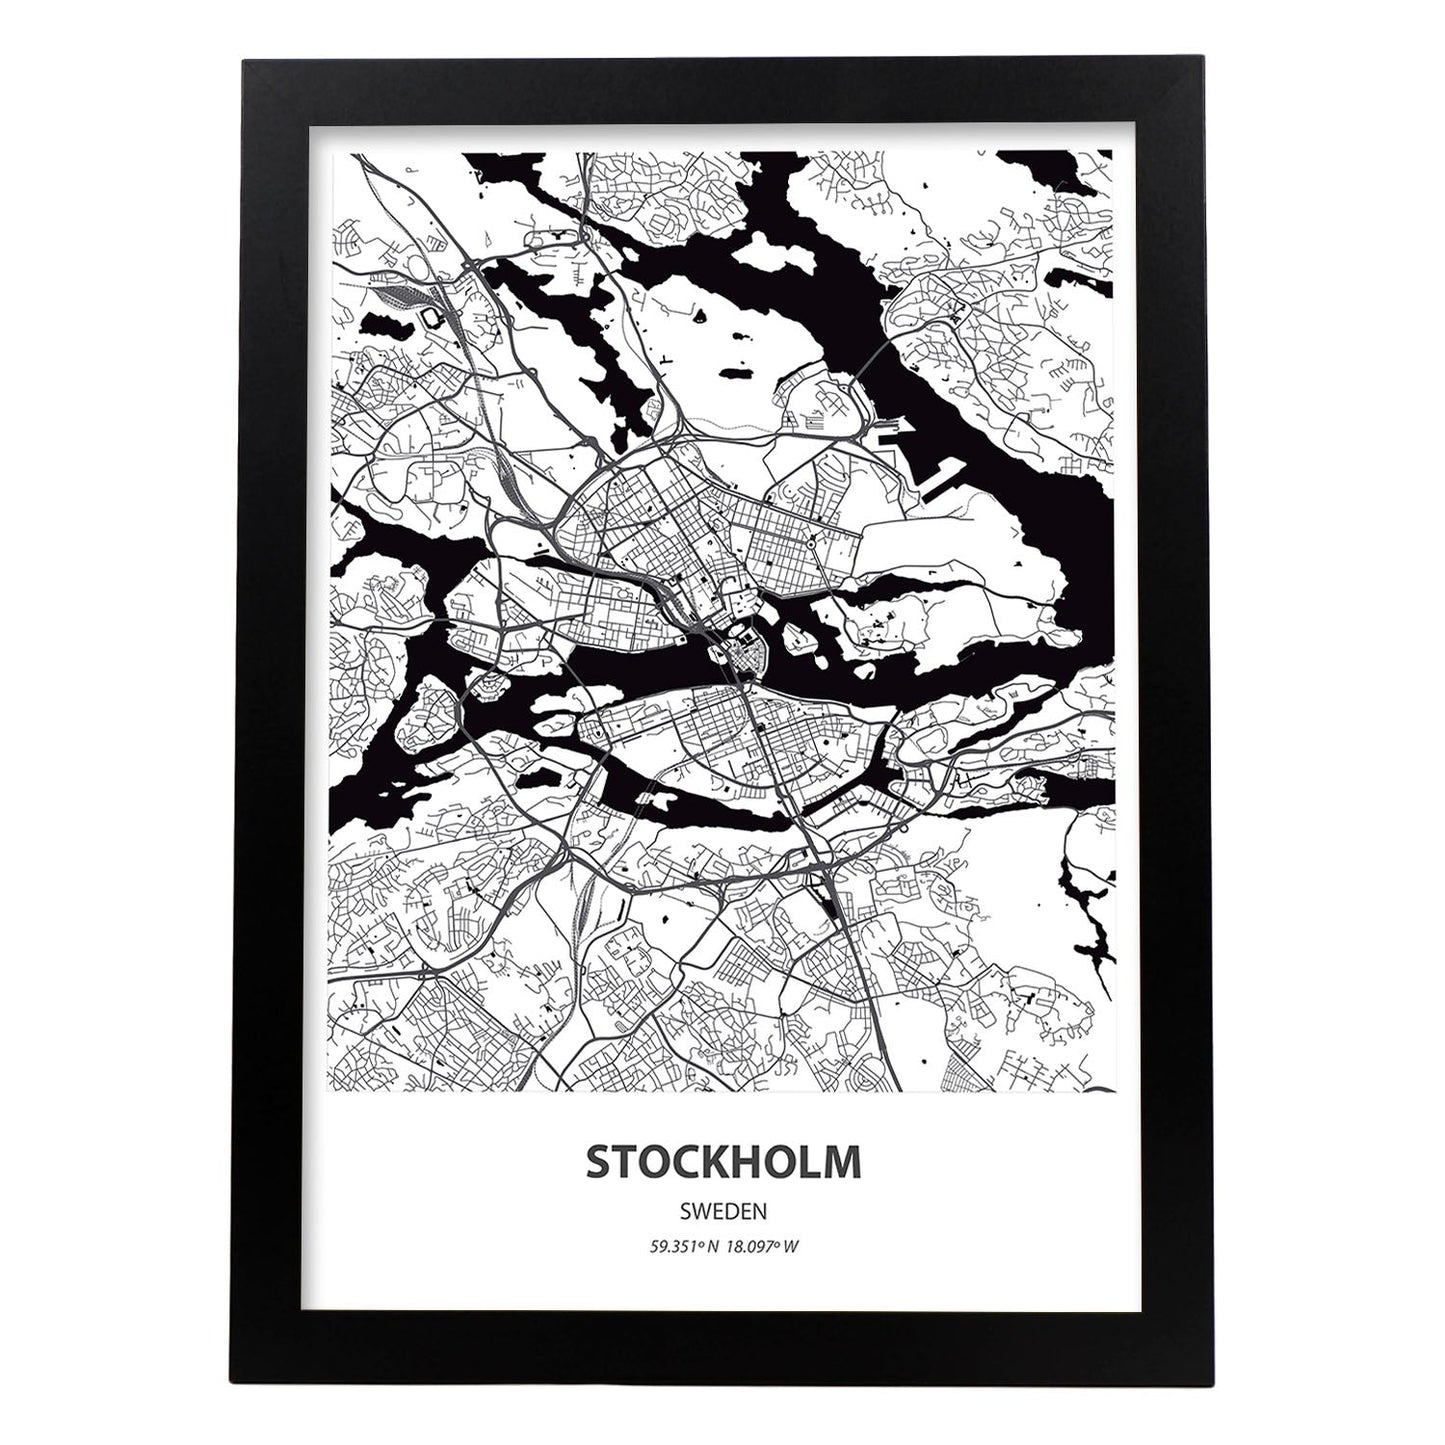 Poster con mapa de Stockholm - Suecia. Láminas de ciudades del norte de Europa con mares y ríos en color negro.-Artwork-Nacnic-A4-Marco Negro-Nacnic Estudio SL